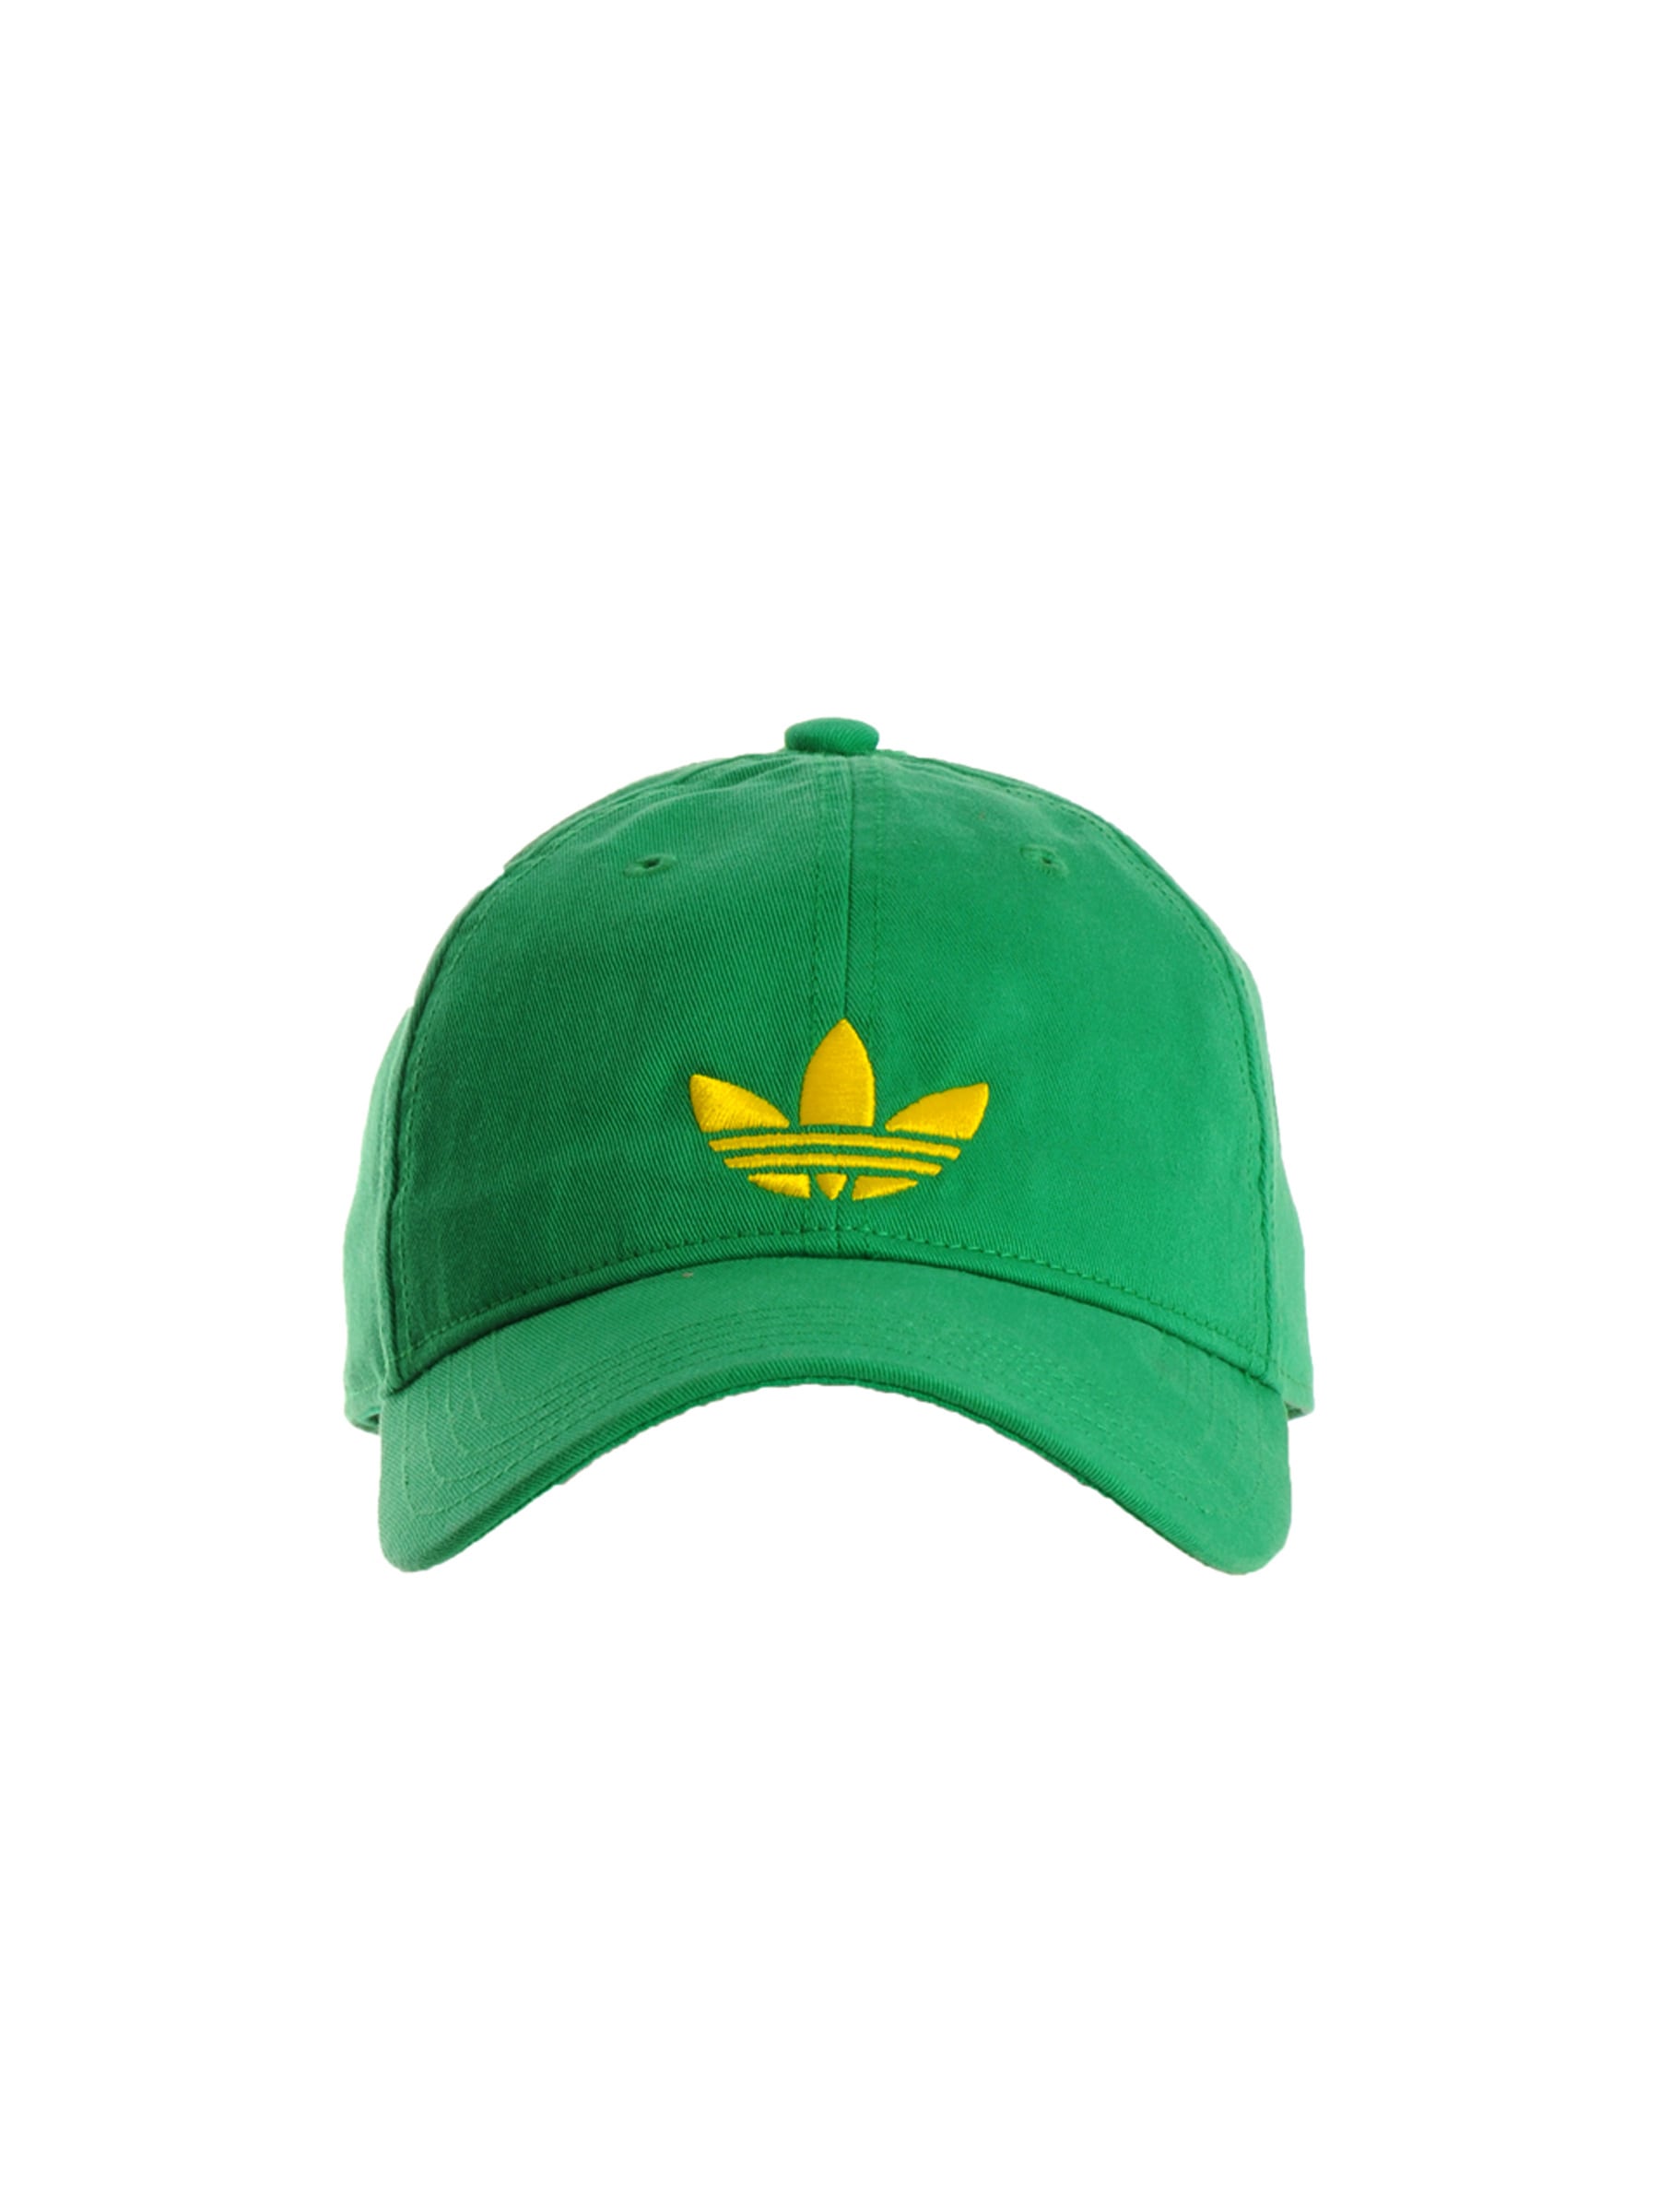 ADIDAS Originals Unisex Adicolor Green Cap